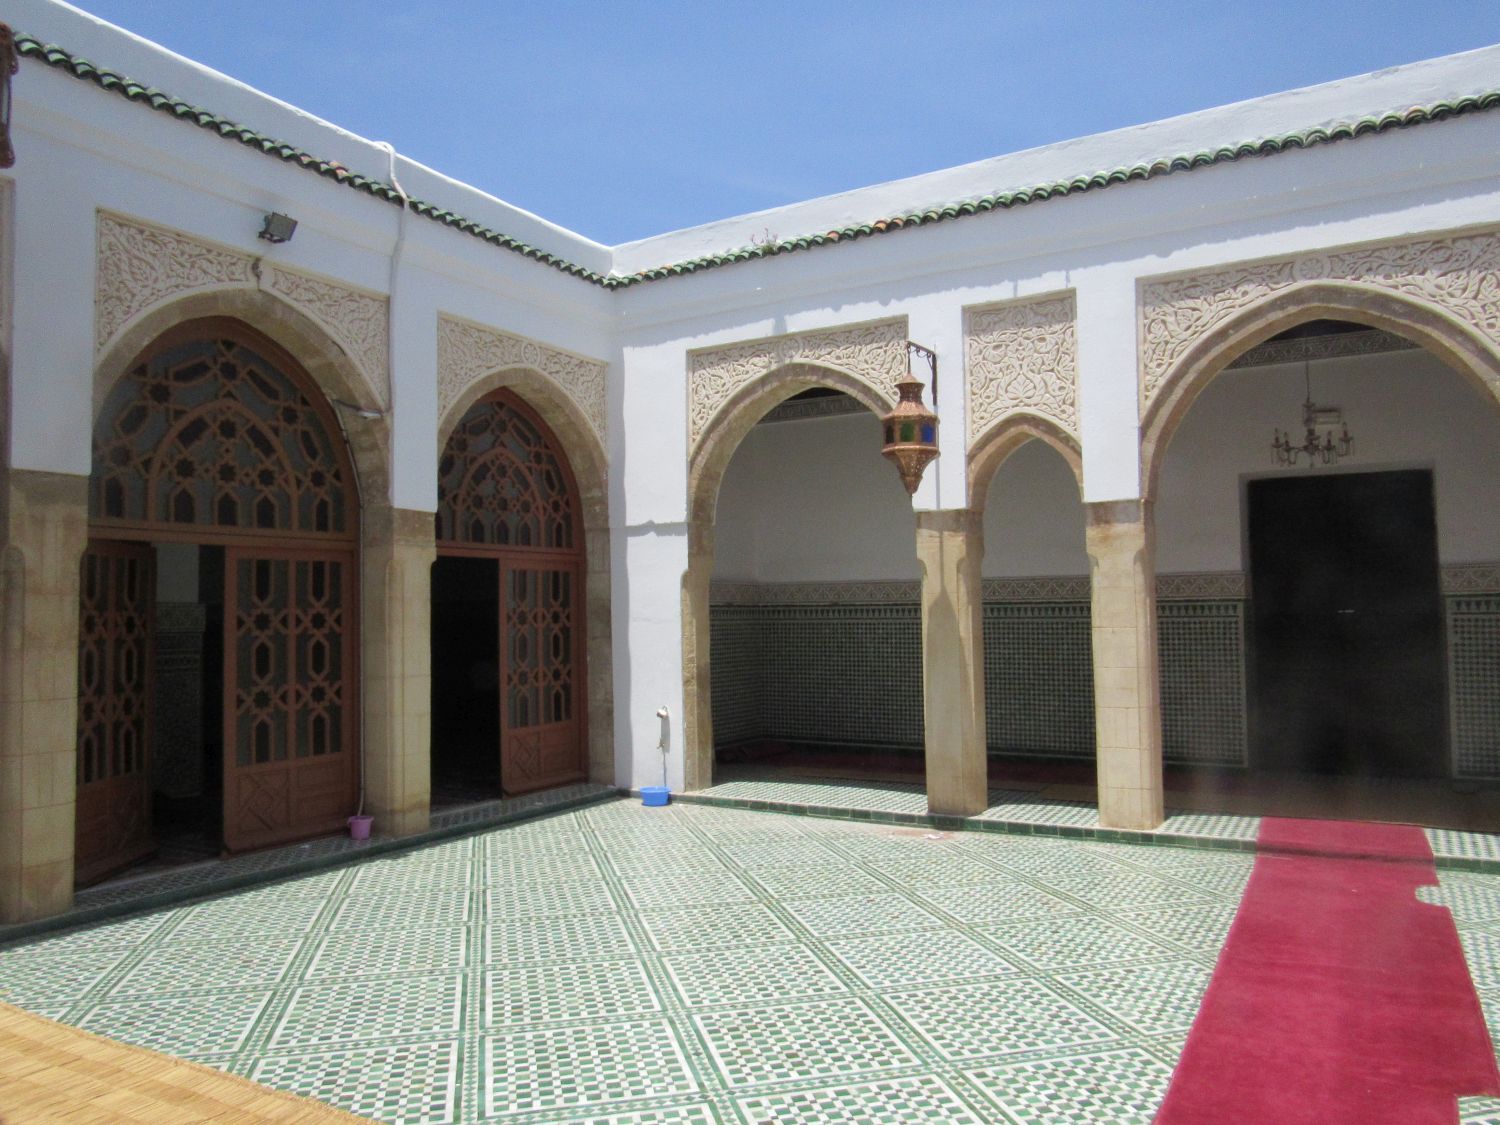 Interior view, courtyard.